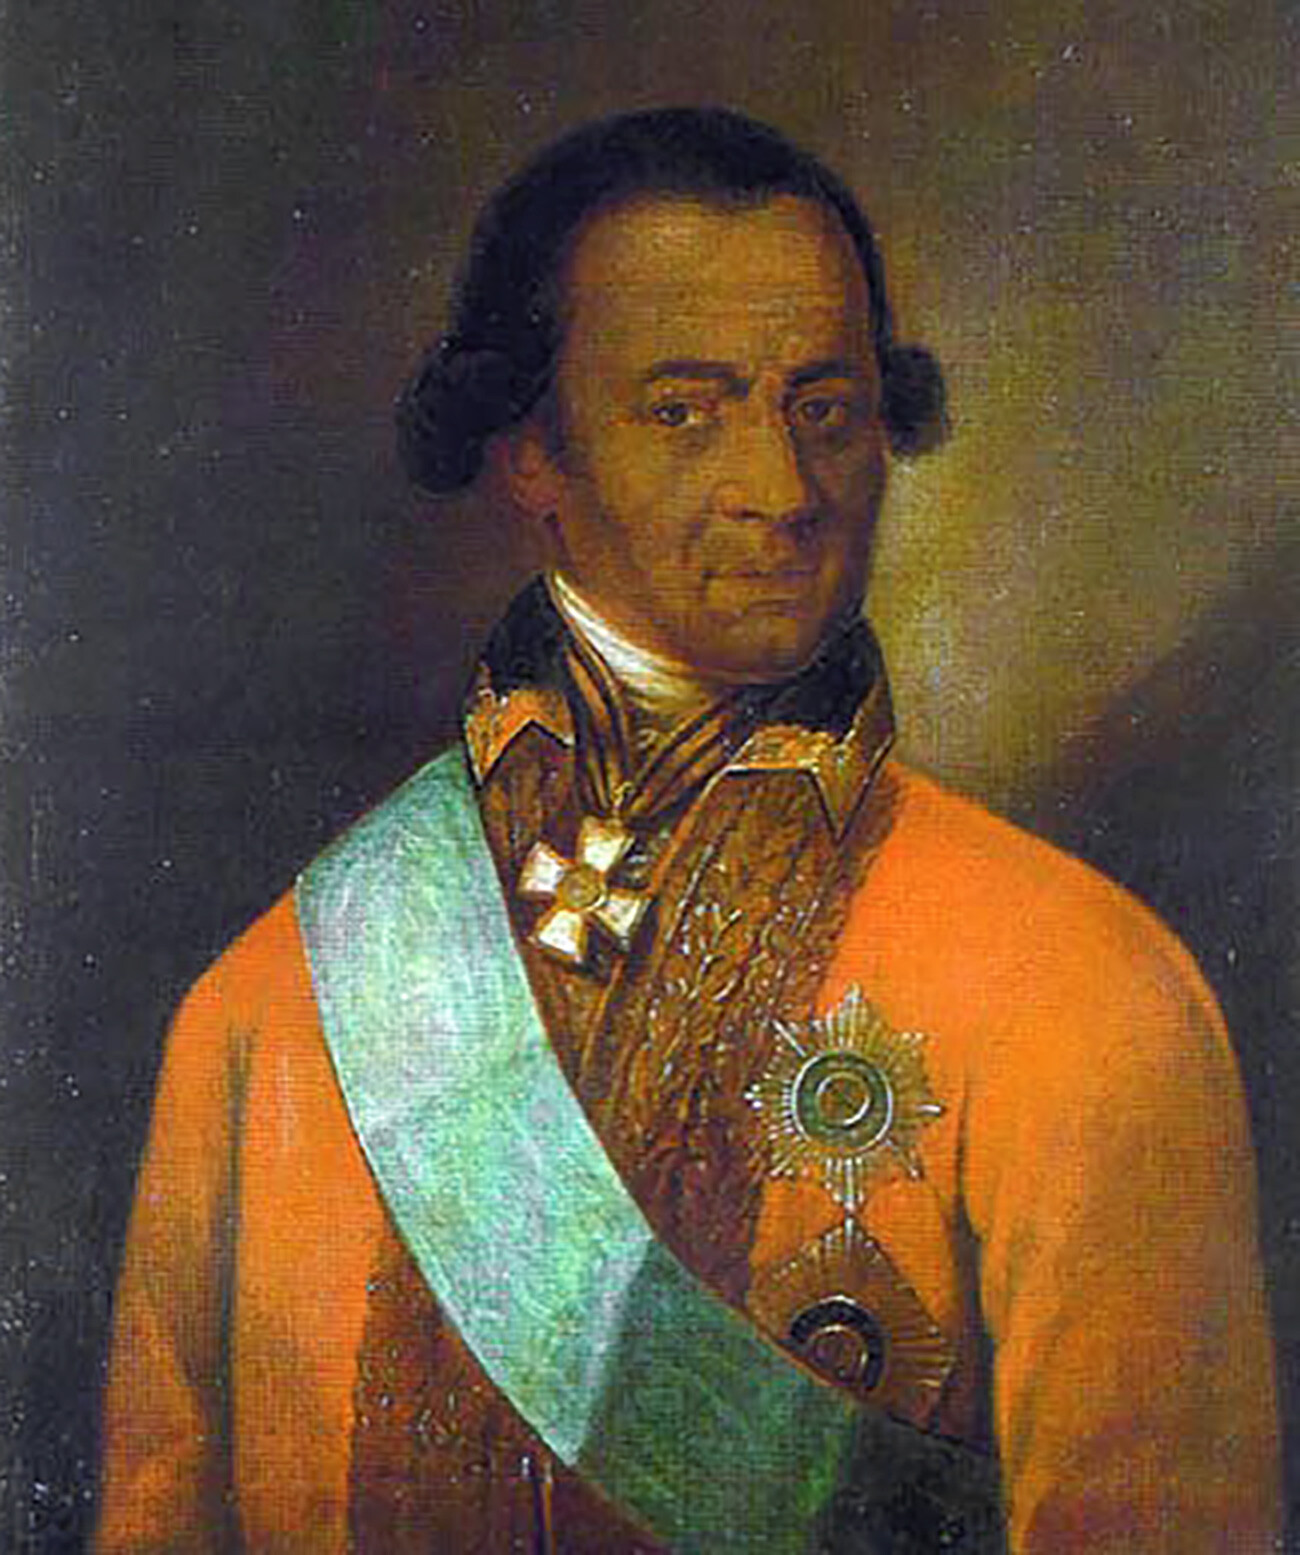 Portret, ki ga nekateri raziskovalci pripisujejo portretu A. P. Hannibala 